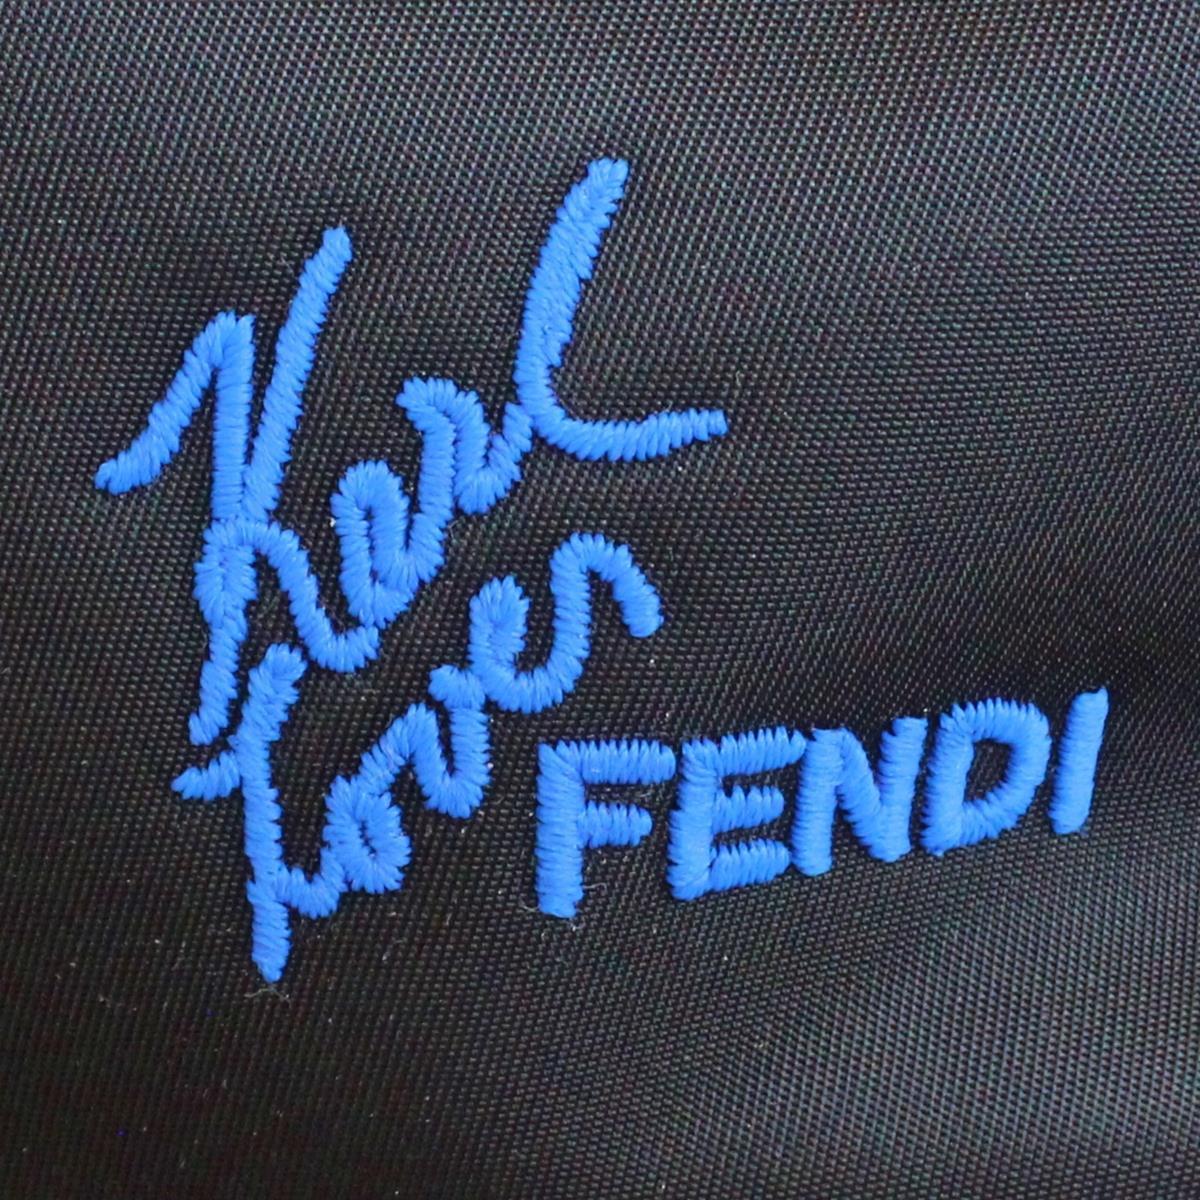 Fendi Karlito Fur Backpack In Excellent Condition For Sale In Gazzaniga (BG), IT